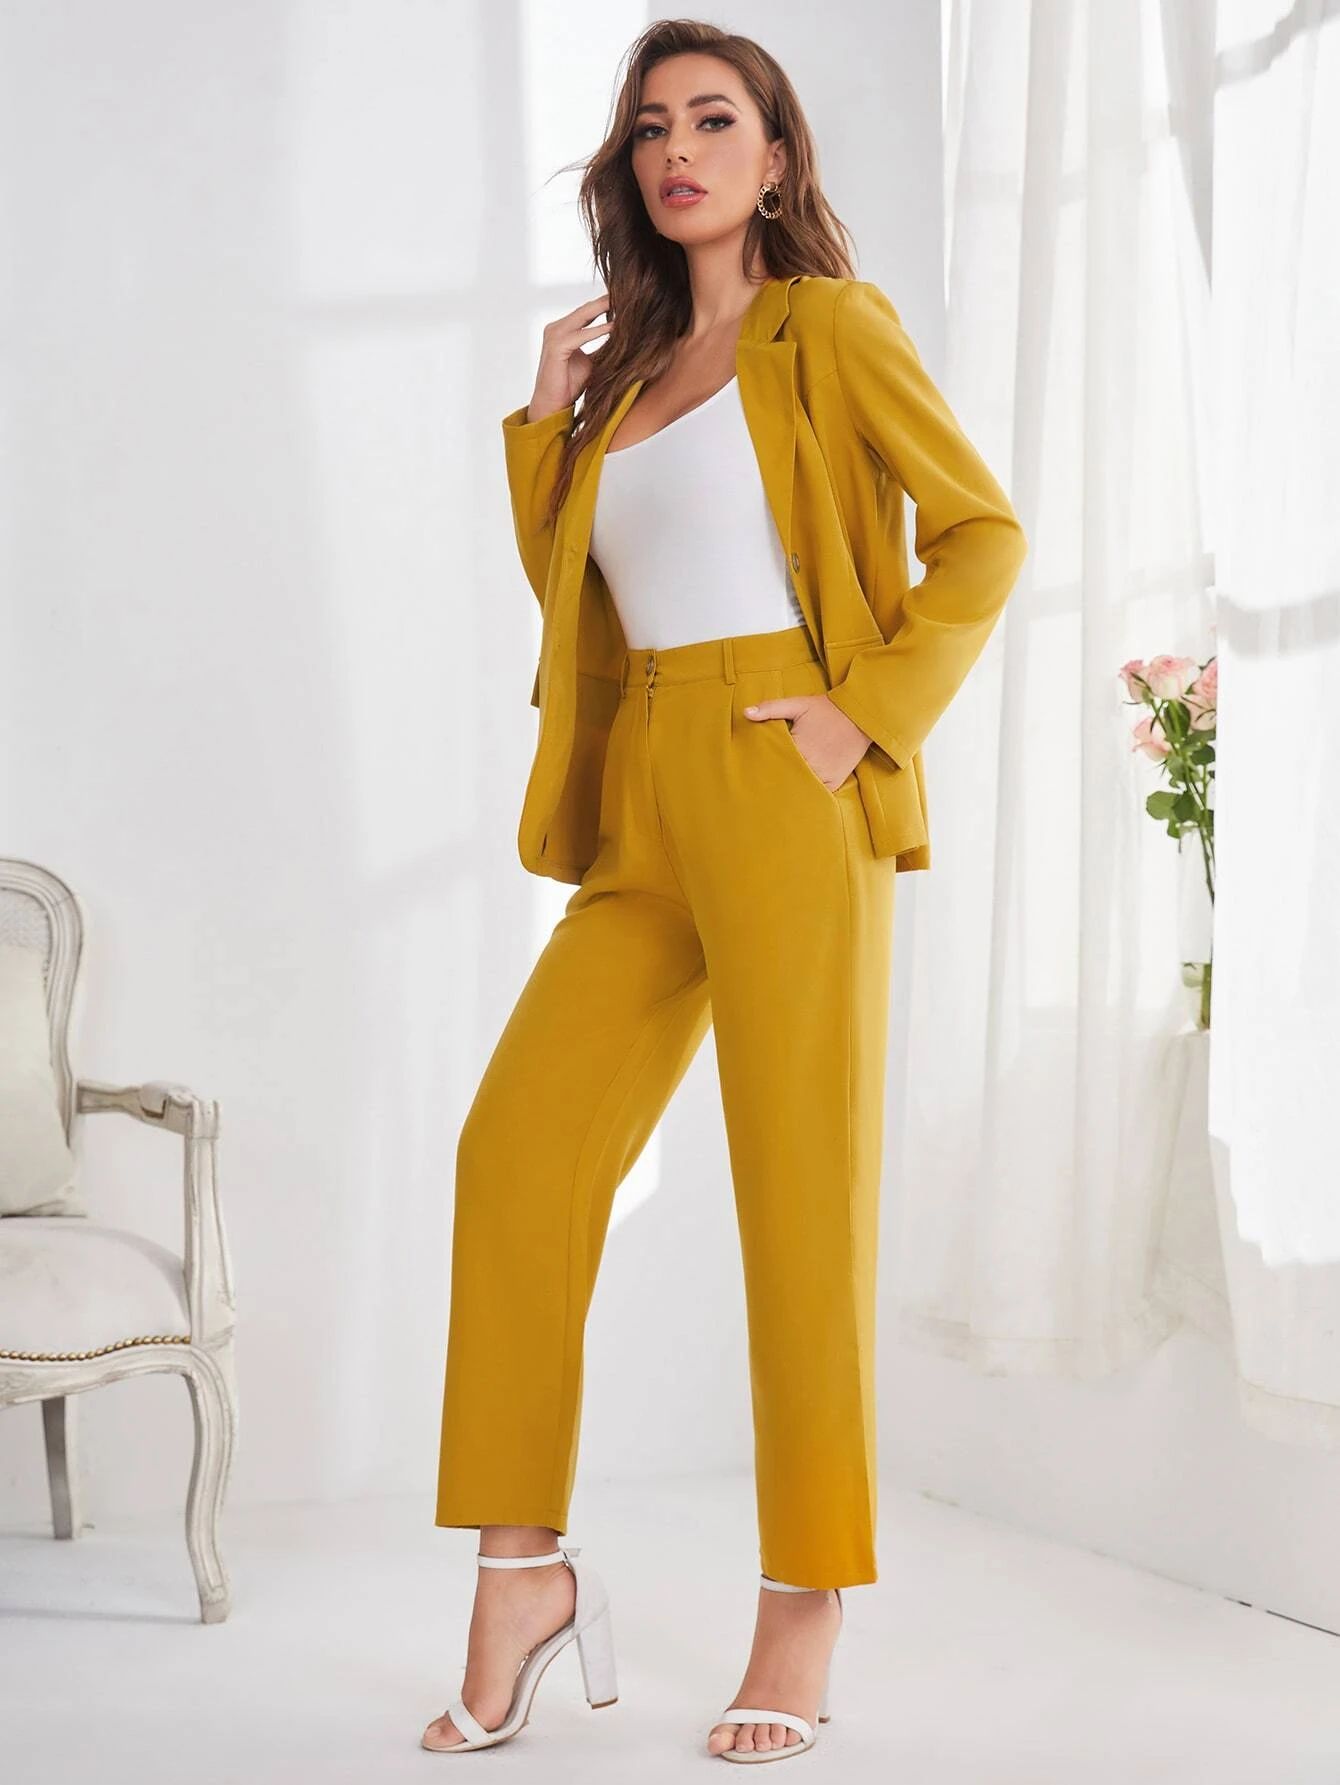 SHEIN BIZwear Solid Button Front Blazer & Tailored Pants Workwear | SHEIN